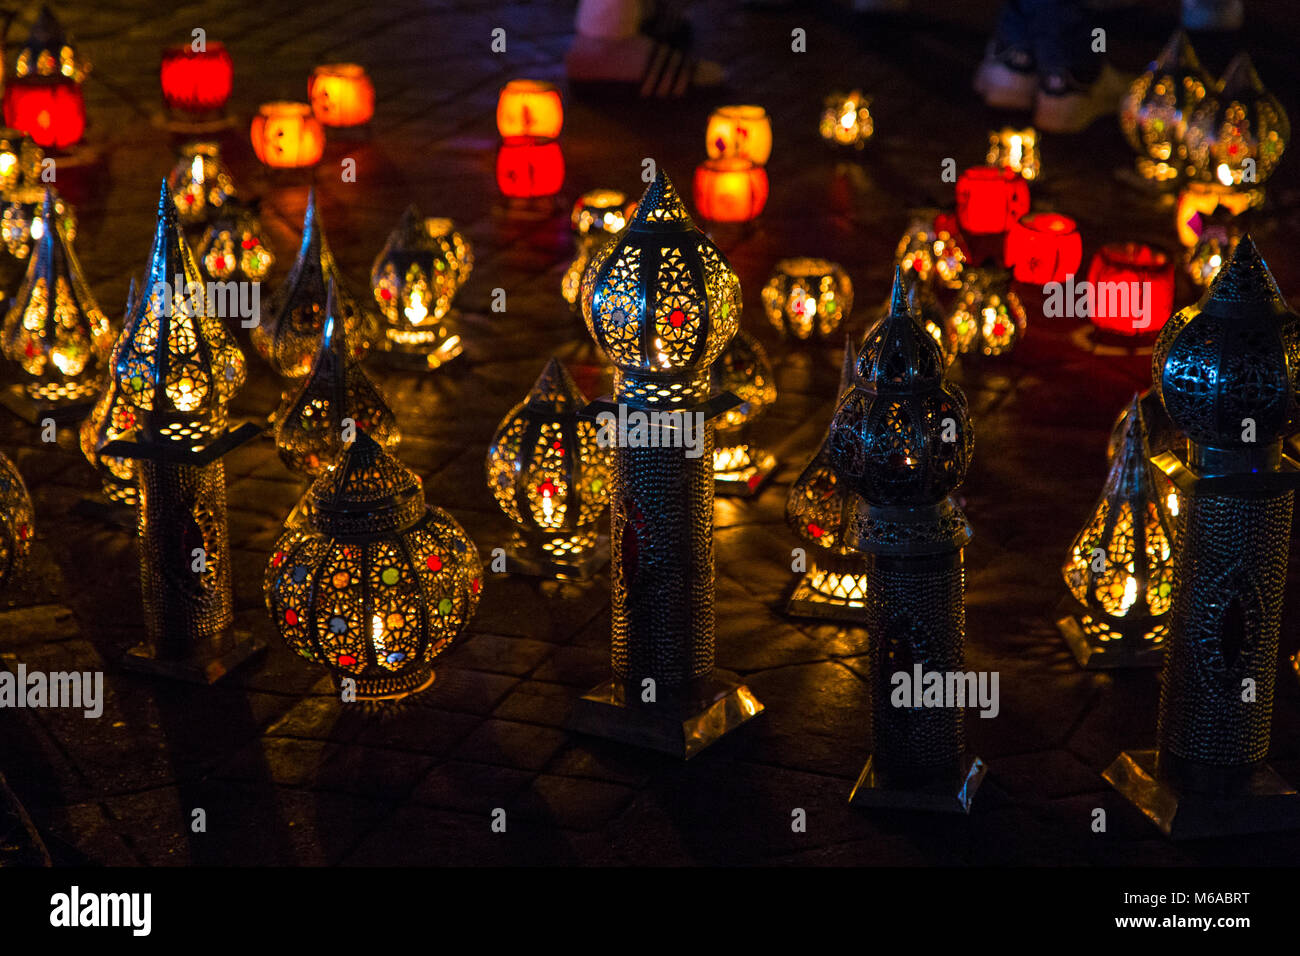 Anzeige der farbenfrohen orientalischen Lampen auf dem Markt in Marrakesch, Marokko Stockfoto